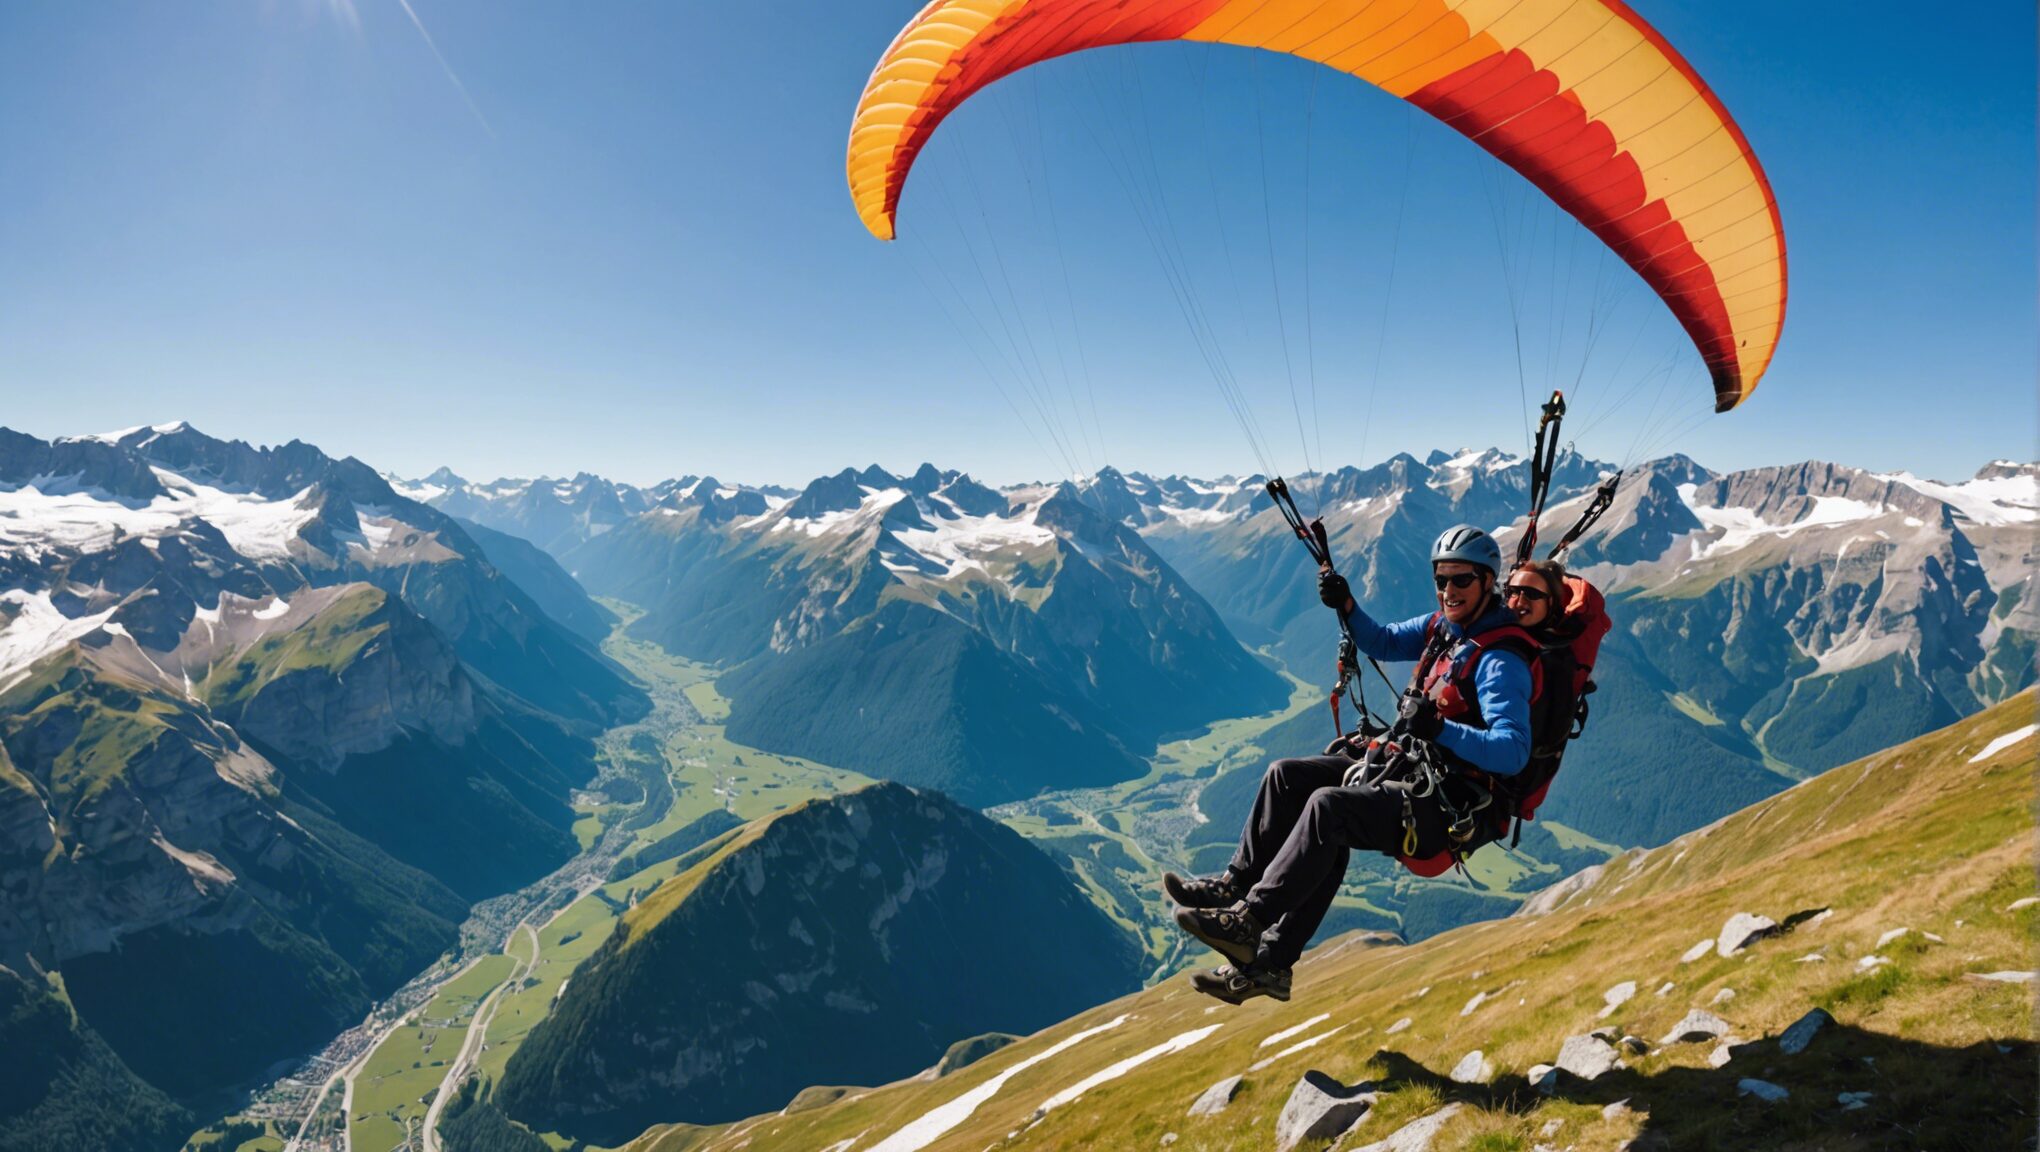 découvrez comment vivre une aventure inoubliable en famille à haute altitude en pratiquant le parapente dans les magnifiques alpes. conseils, itinéraires et sensations fortes au programme !